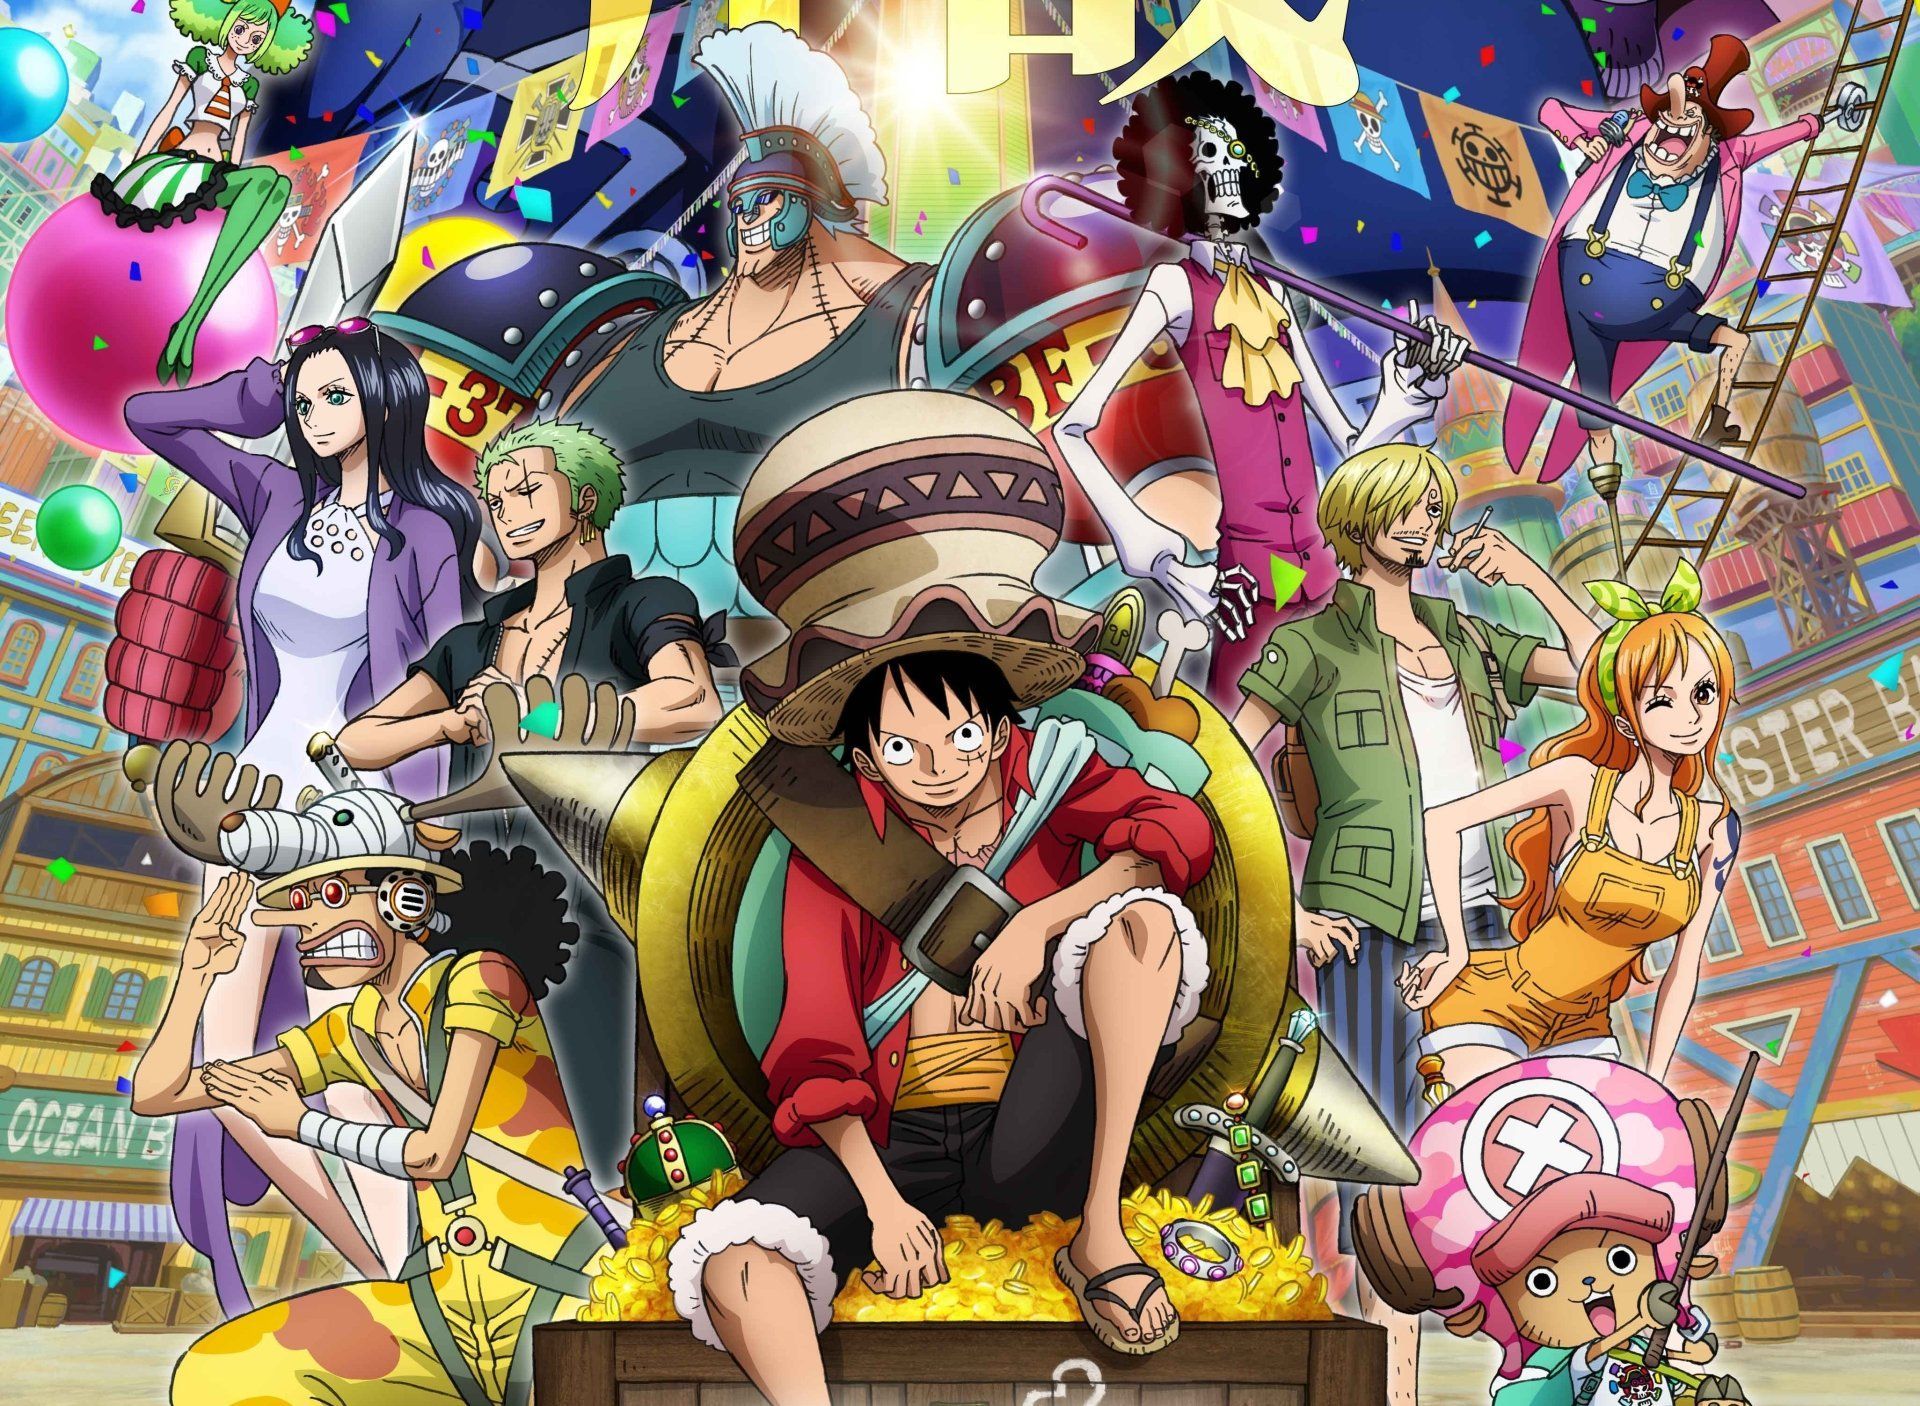 Hình nền One Piece nghệ thuật là những tác phẩm nghệ thuật lột tả sự đẹp và sự epic của siêu phẩm manga nổi tiếng này, chắc chắn sẽ khiến bạn có một trải nghiệm hoàn toàn mới mẻ và thú vị khi sử dụng máy tính.